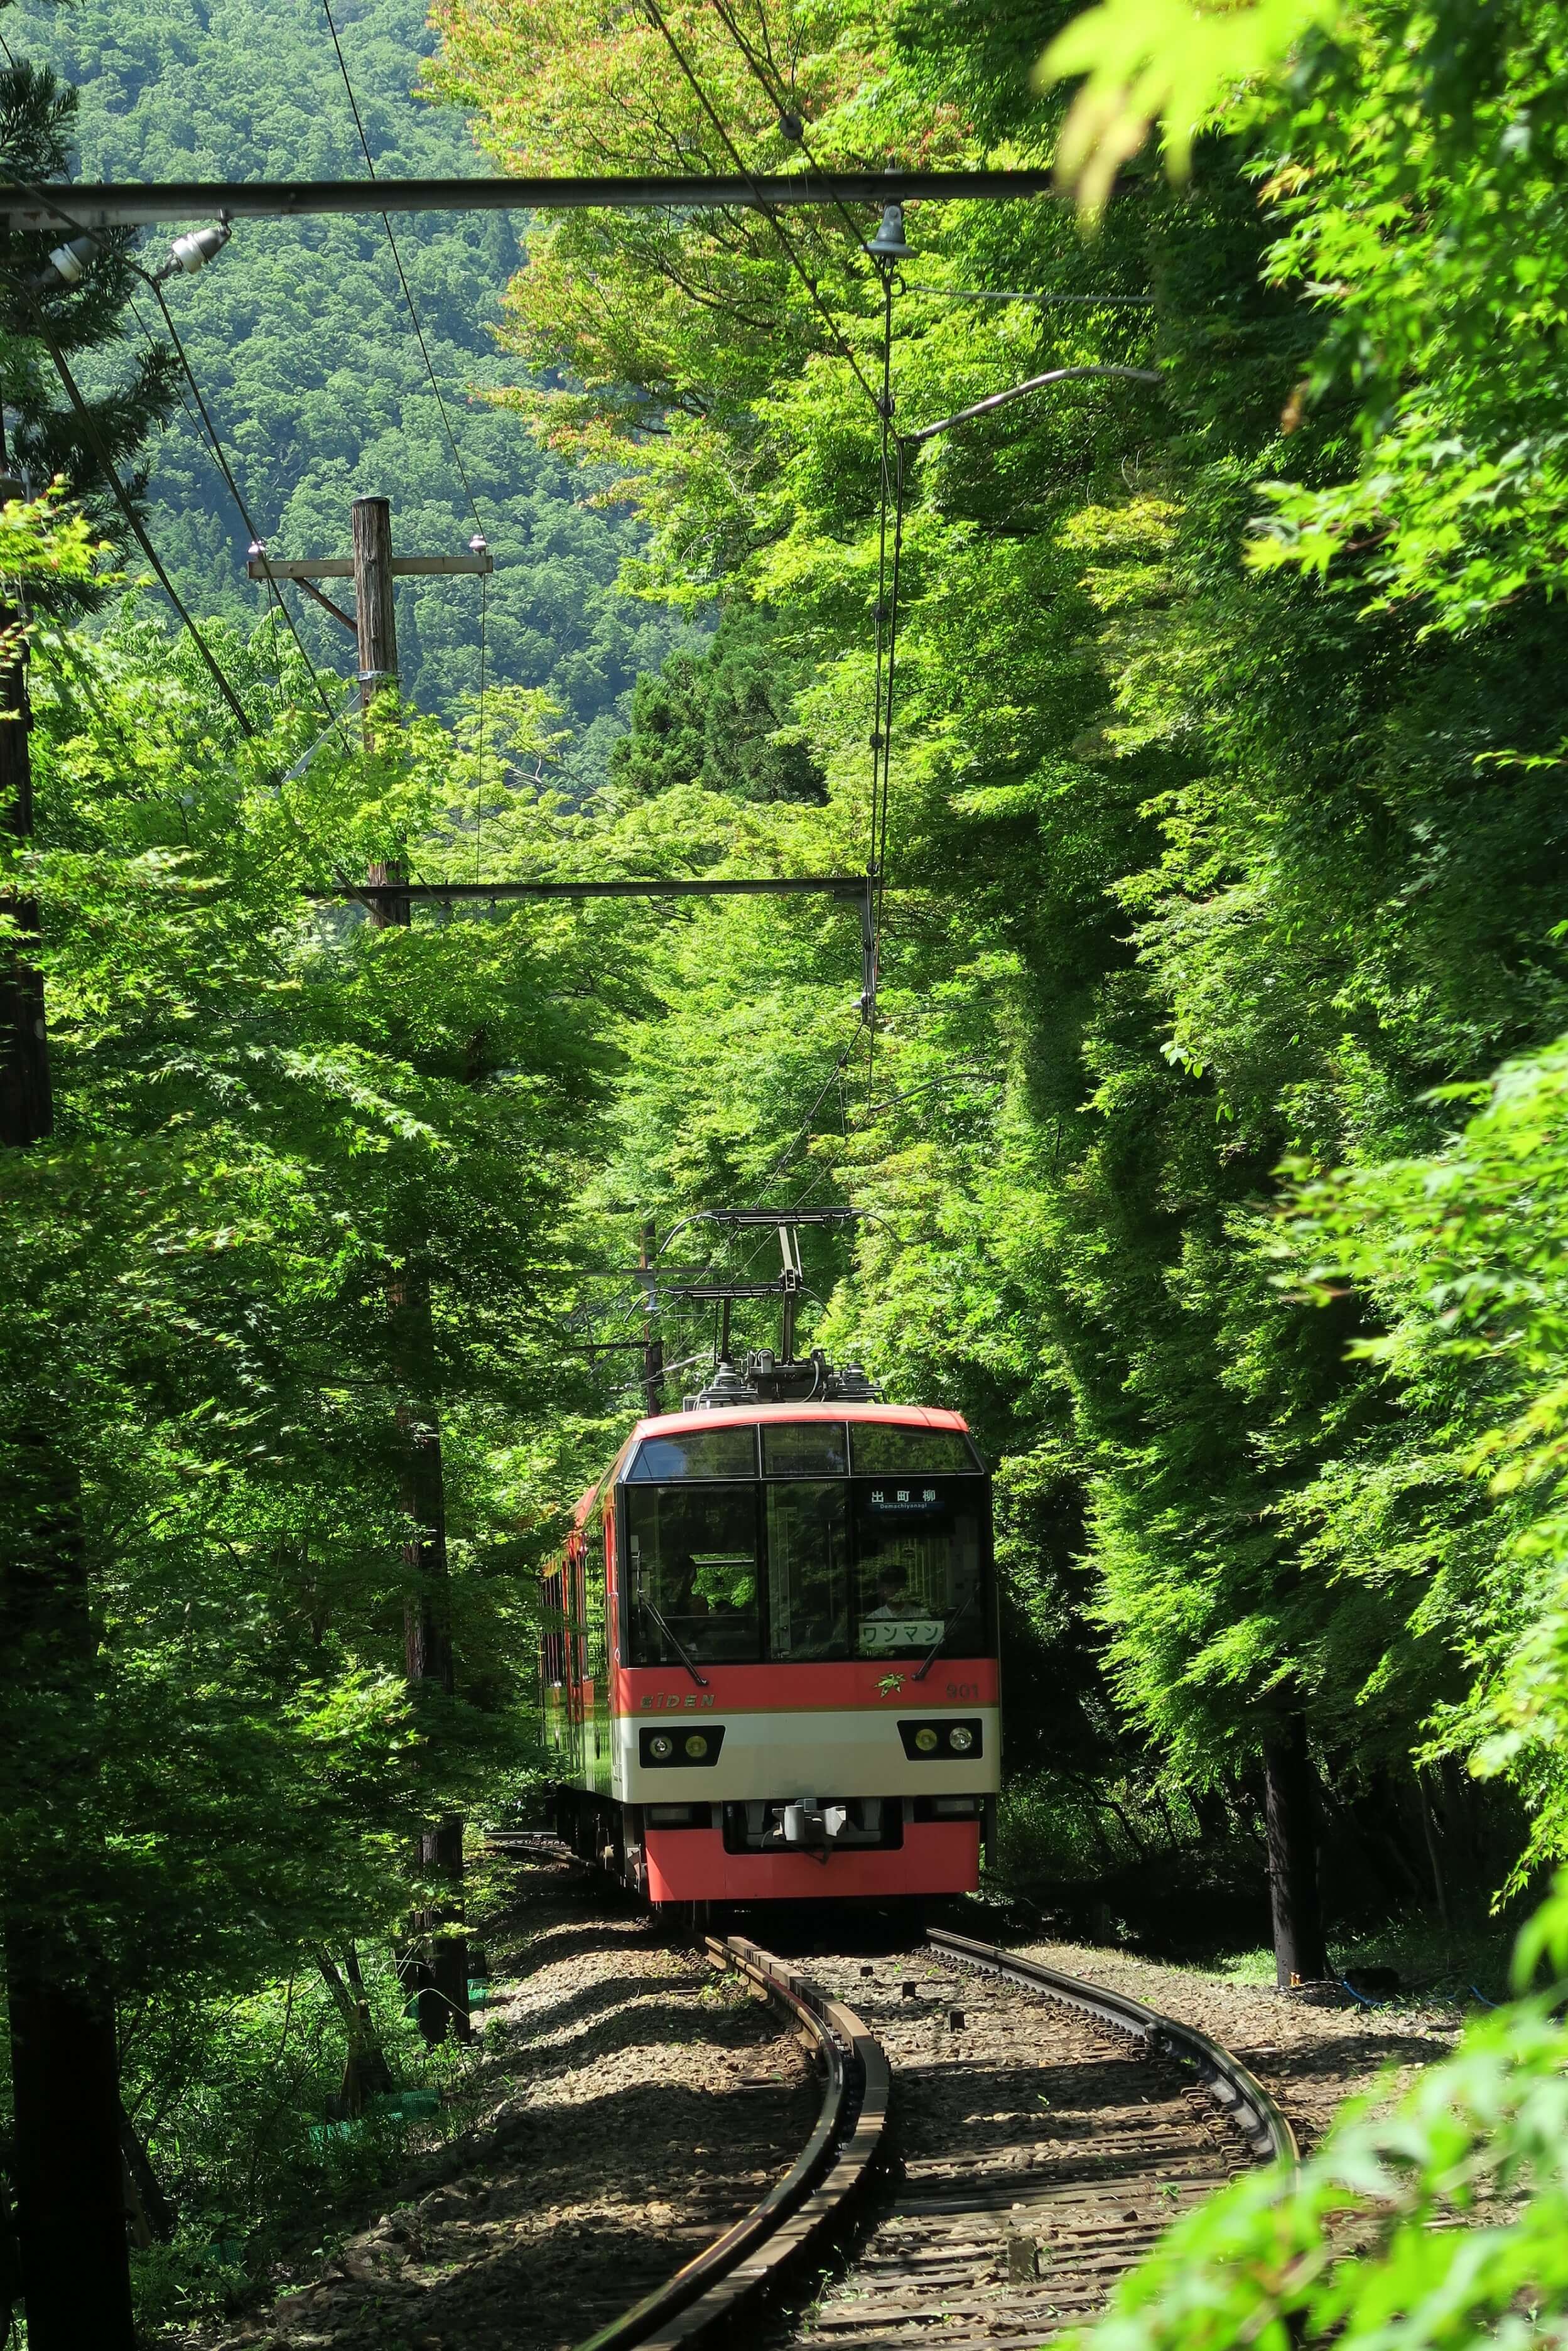 06_叡山電車_もみじのトンネル 京都 Kyoto train